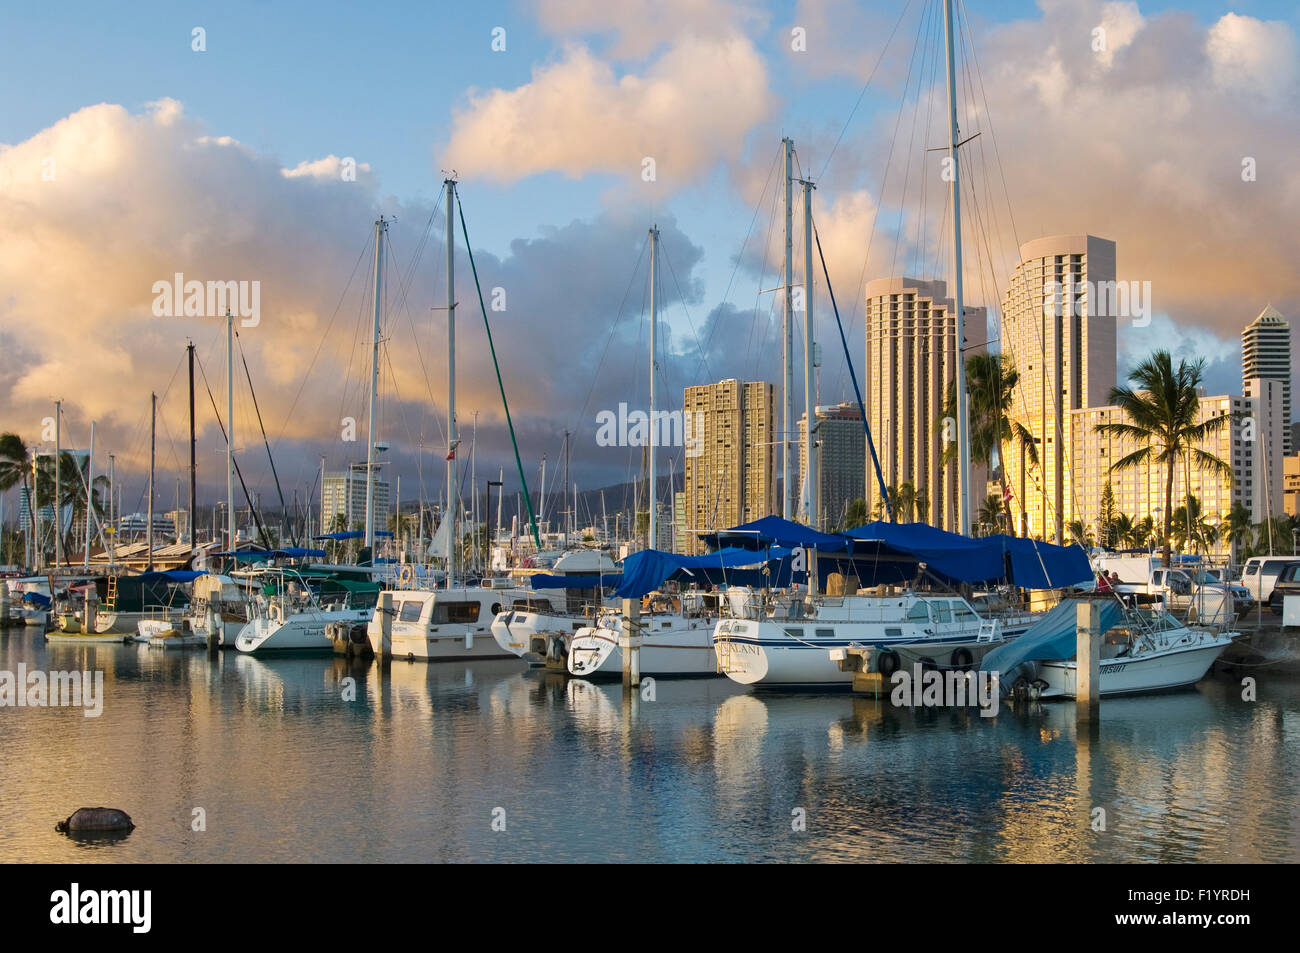 Atardecer en el puerto de Ala Wai con Harbour y yates en primer plano y altísimos hoteles en segundo plano. Foto de stock